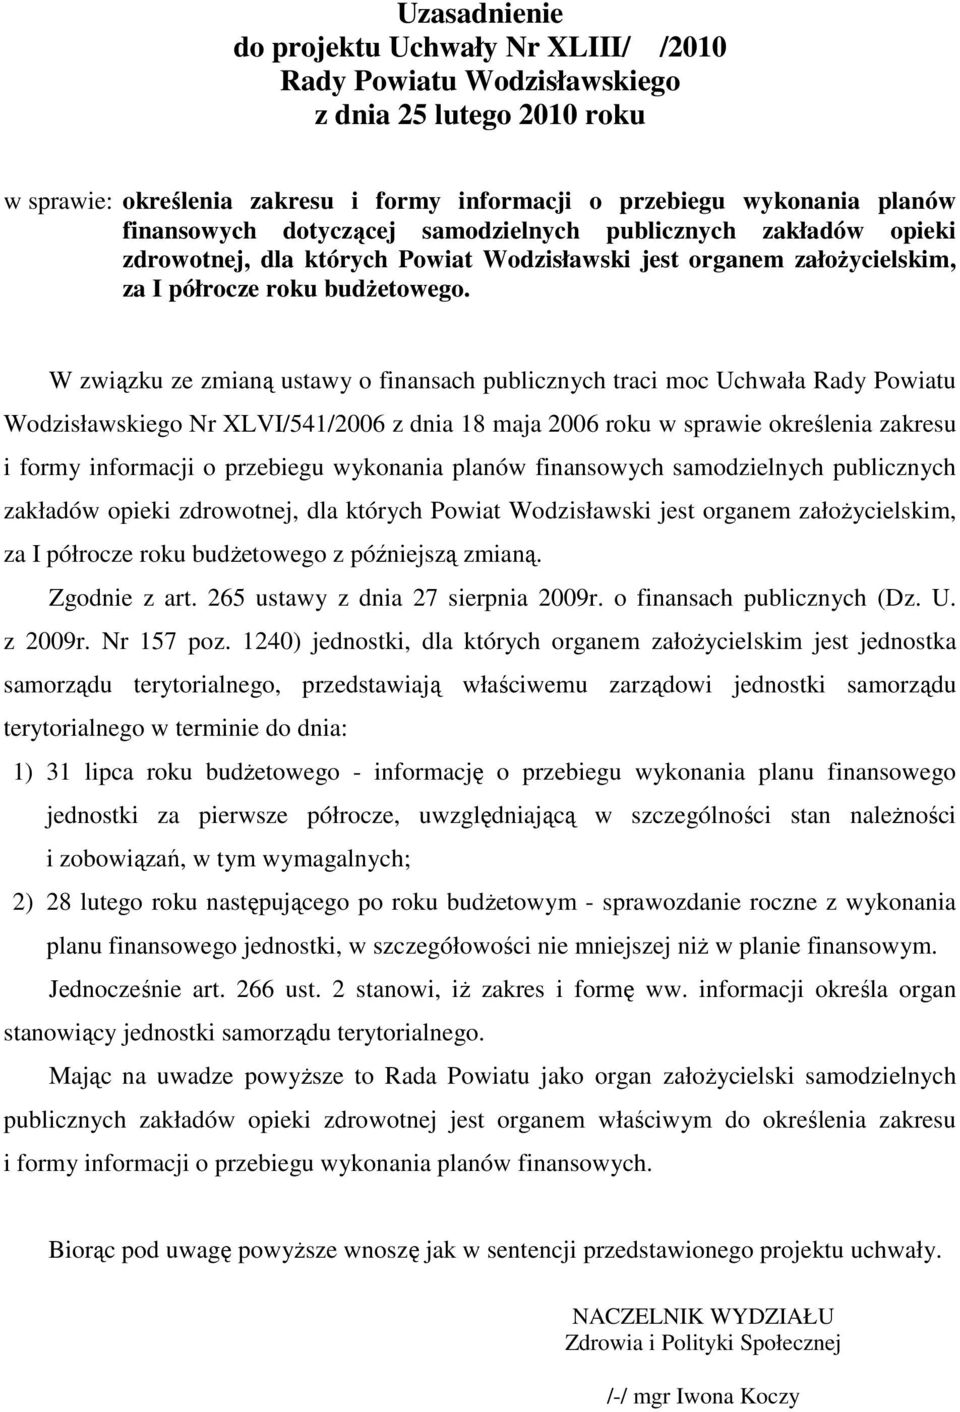 W związku ze zmianą ustawy o finansach publicznych traci moc Uchwała Rady Powiatu Wodzisławskiego Nr XLVI/541/2006 z dnia 18 maja 2006 roku w sprawie określenia zakresu i formy informacji o przebiegu